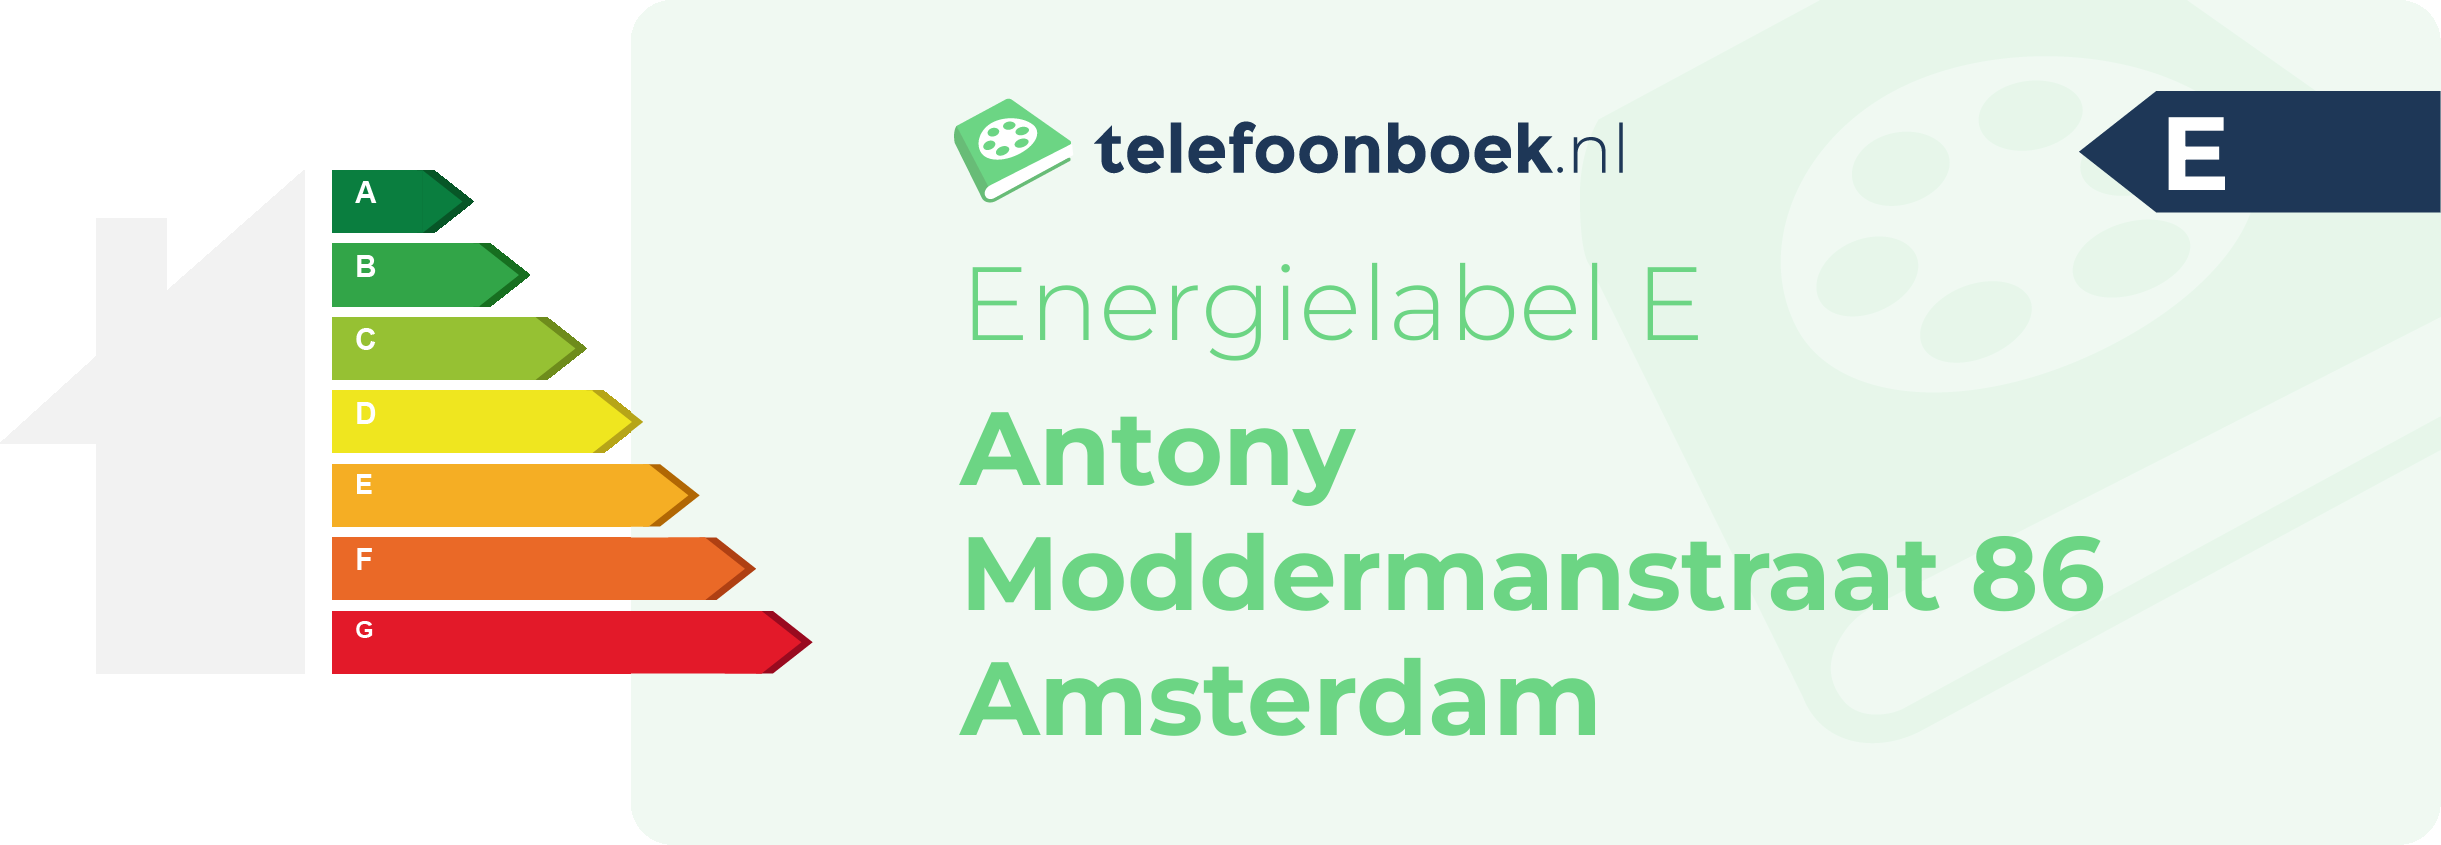 Energielabel Antony Moddermanstraat 86 Amsterdam